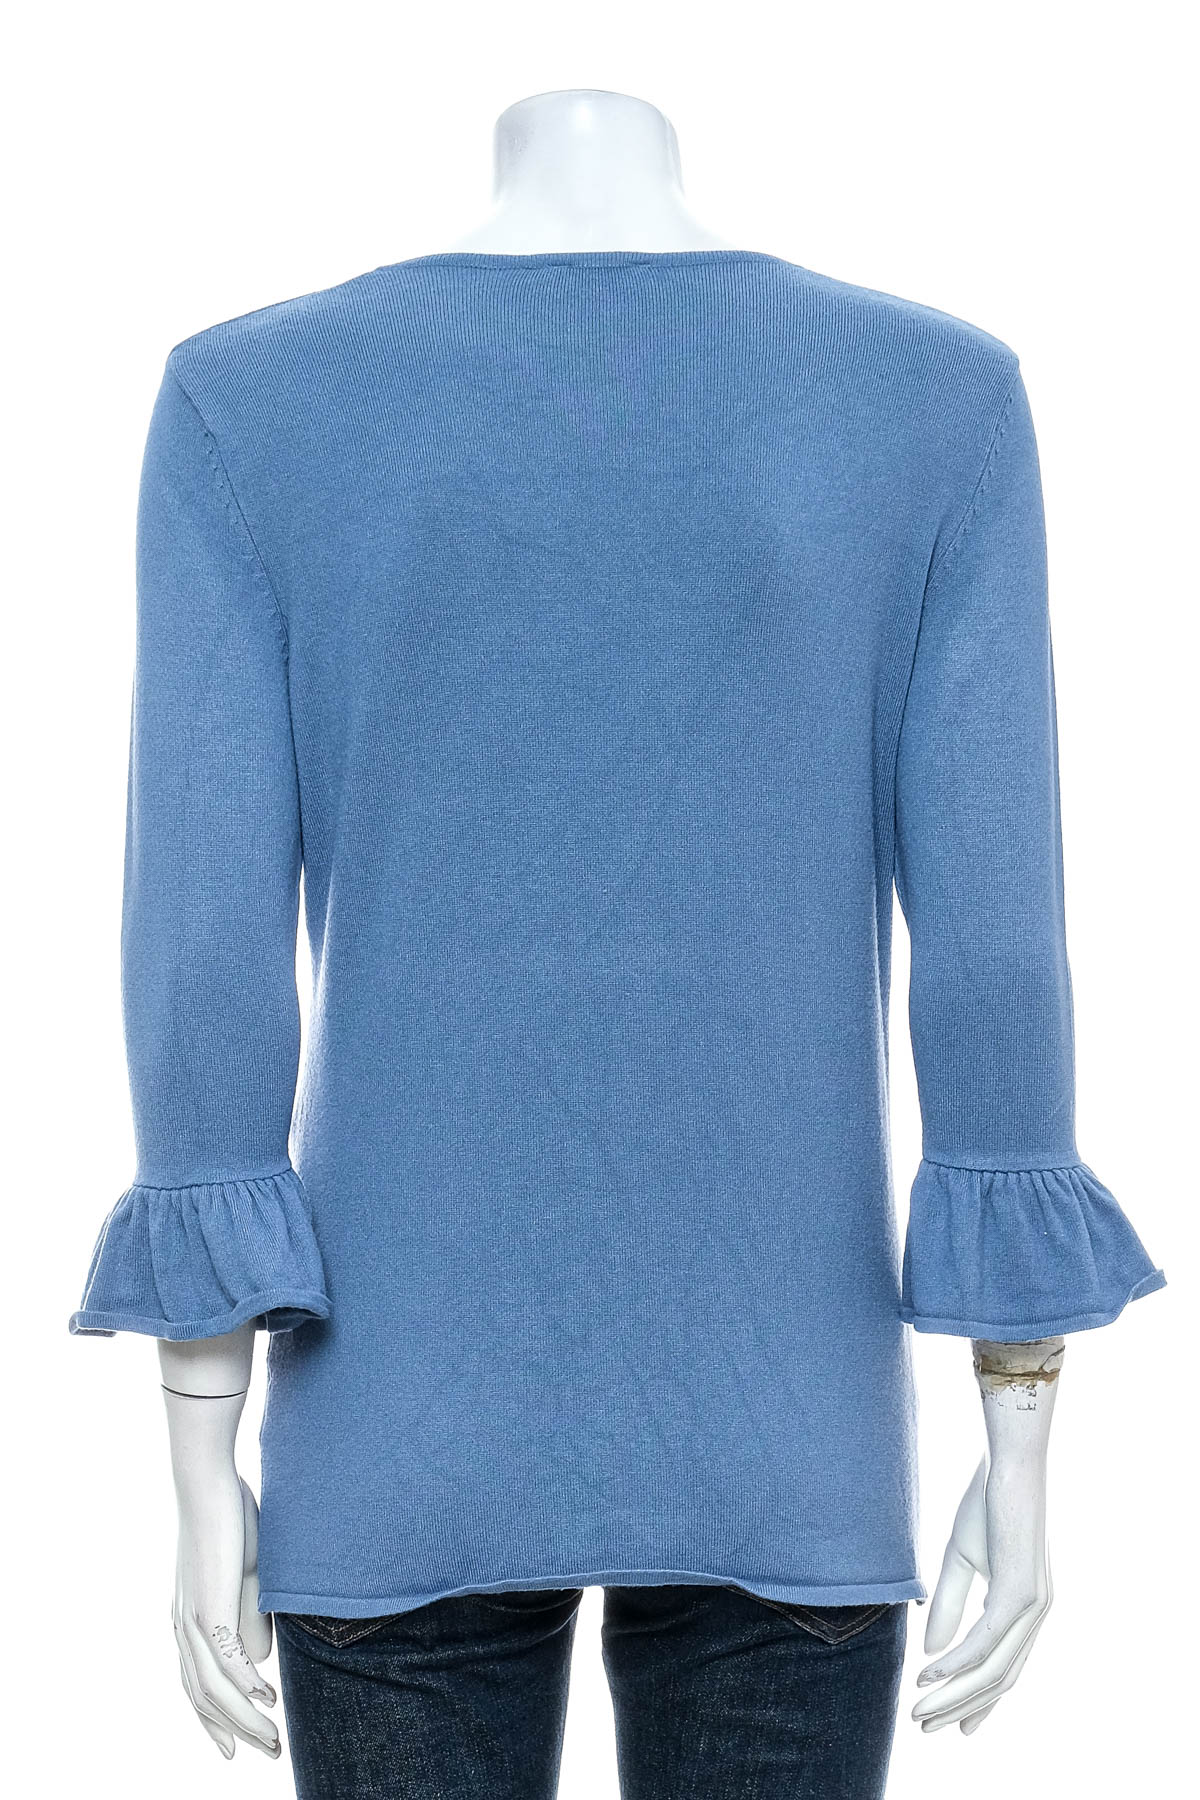 Women's sweater - Blue Motion - 1